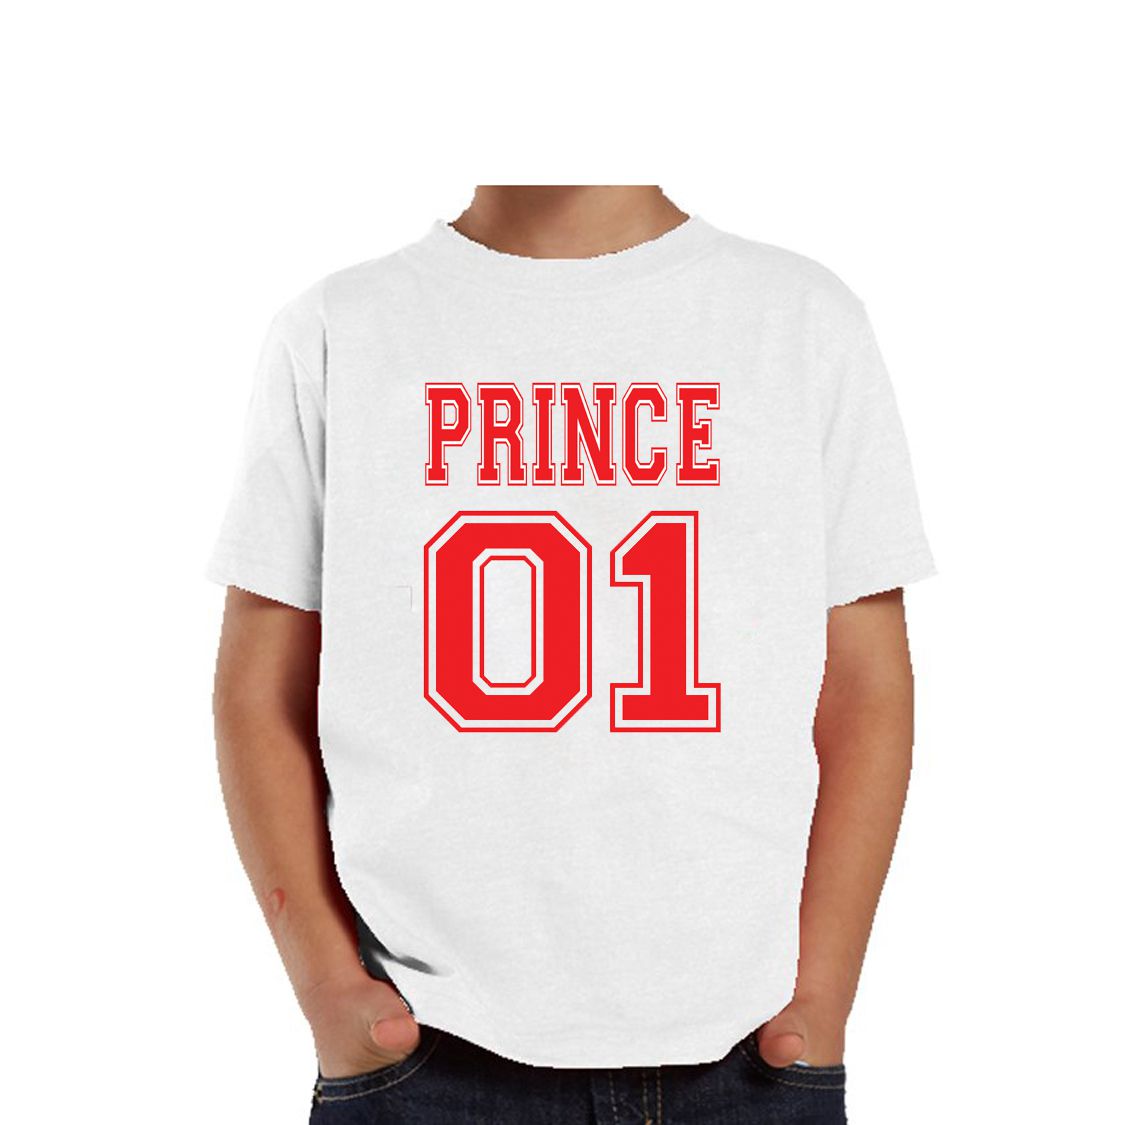 Combo Tshirt On Prince Princess SDL988397952 2 F72a1 